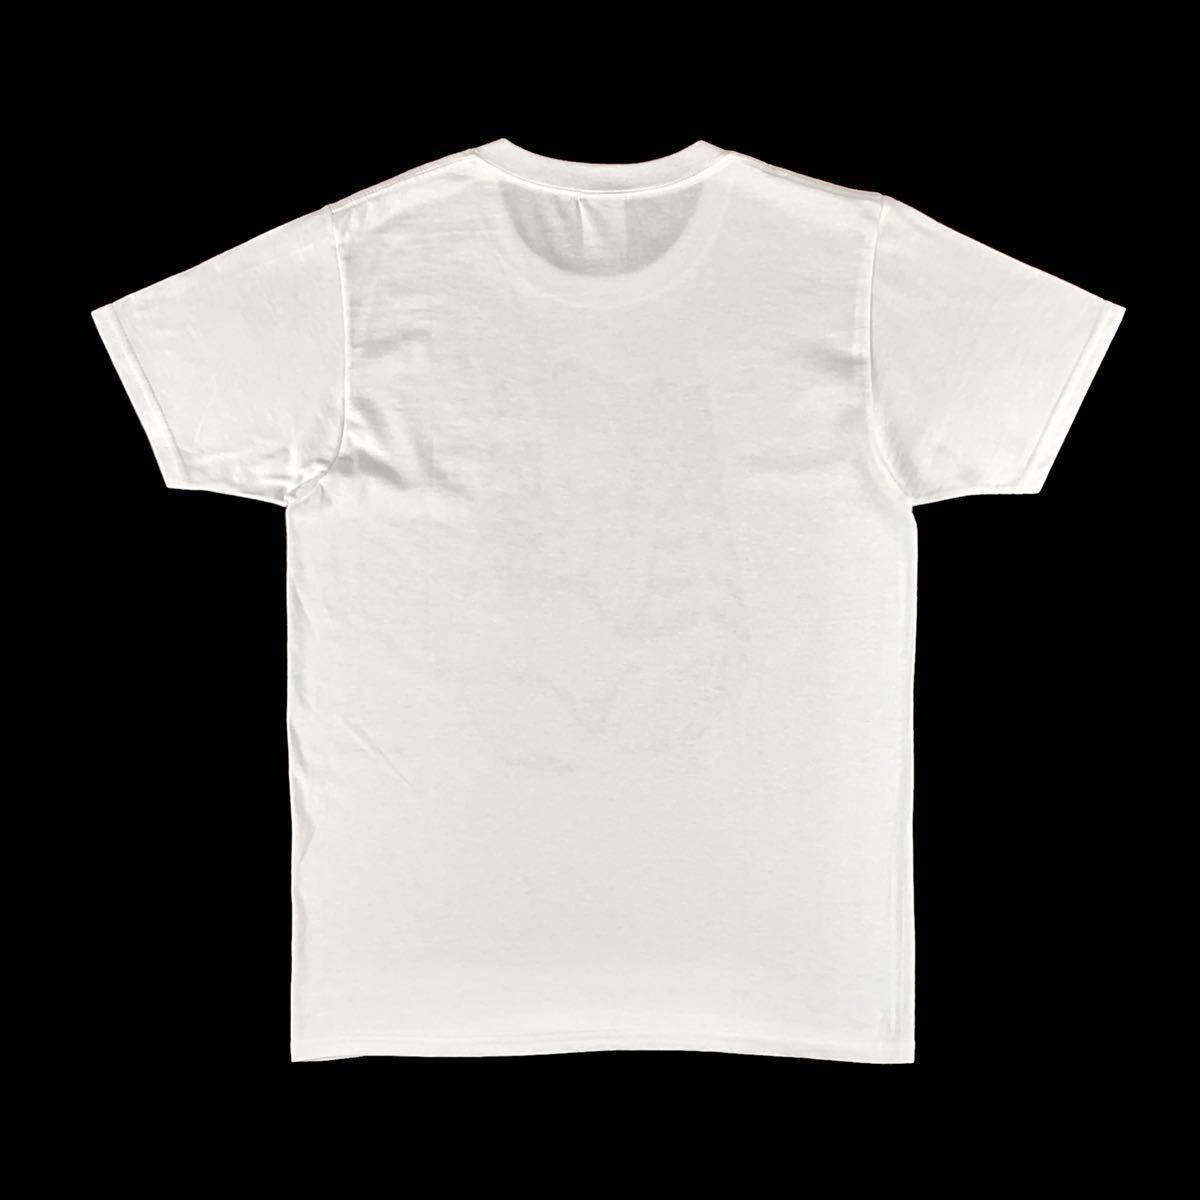 新品 未使用 マリリンモンロー アメリカ セックスシンボル 星条旗 ビキニ タトゥー ニューヨーク 自由の女神 Tシャツ ユニセックス Mサイズ_画像10